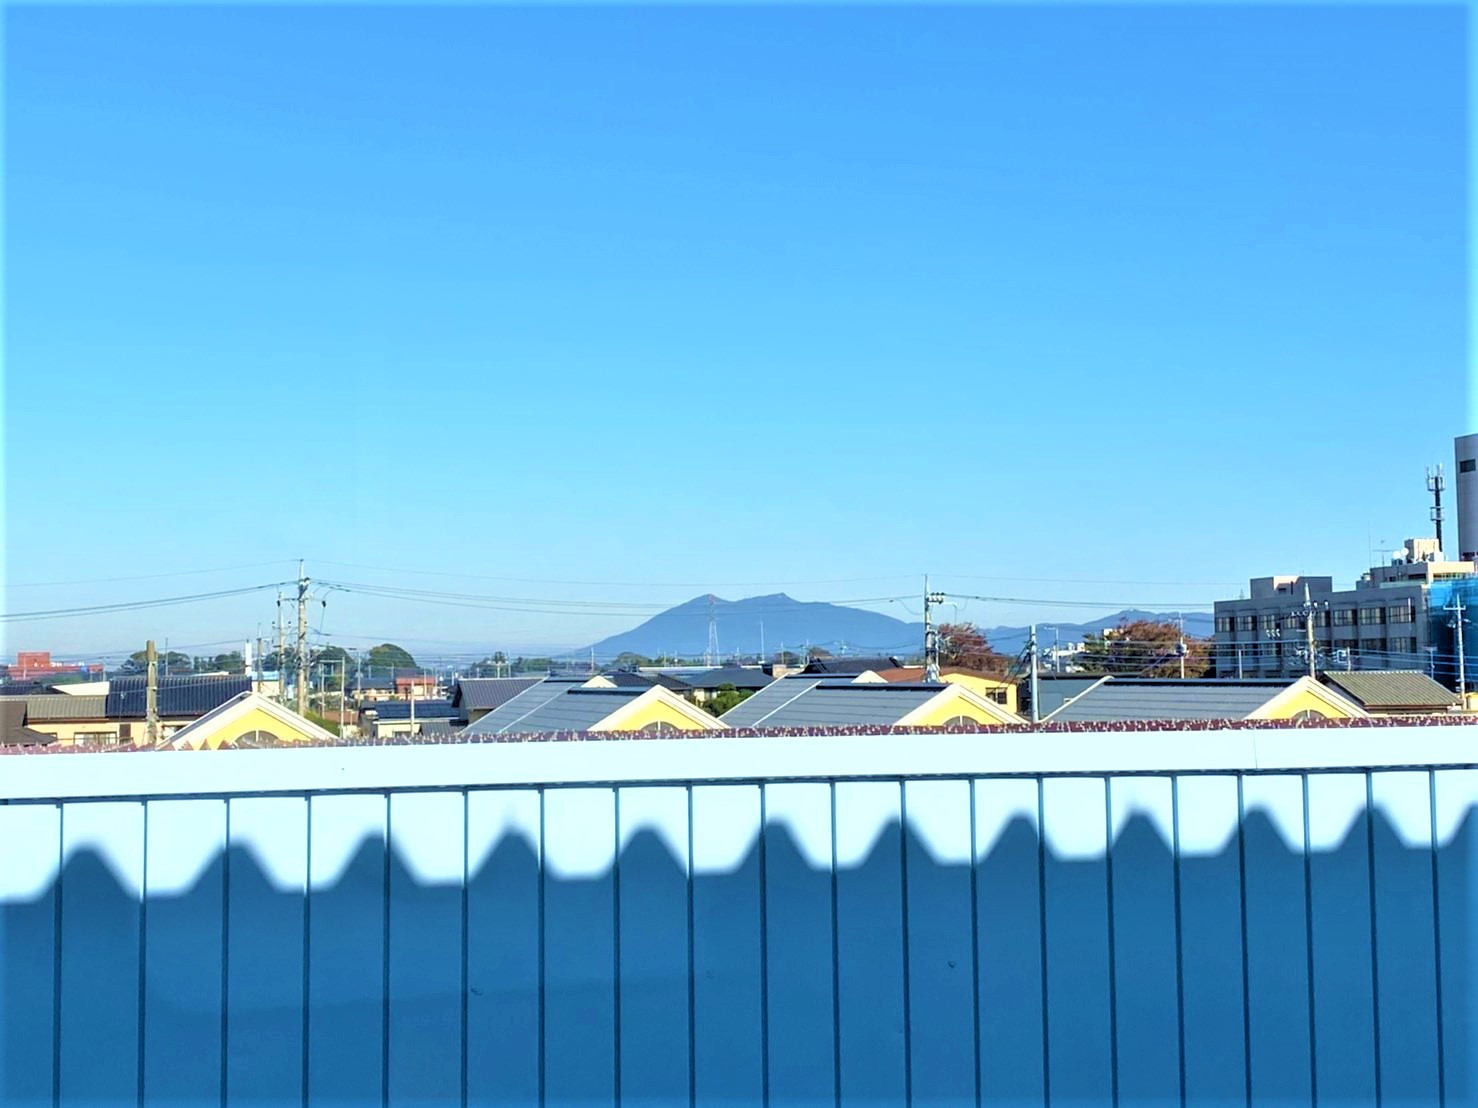 村下商事本社の2階からは筑波山が見れます